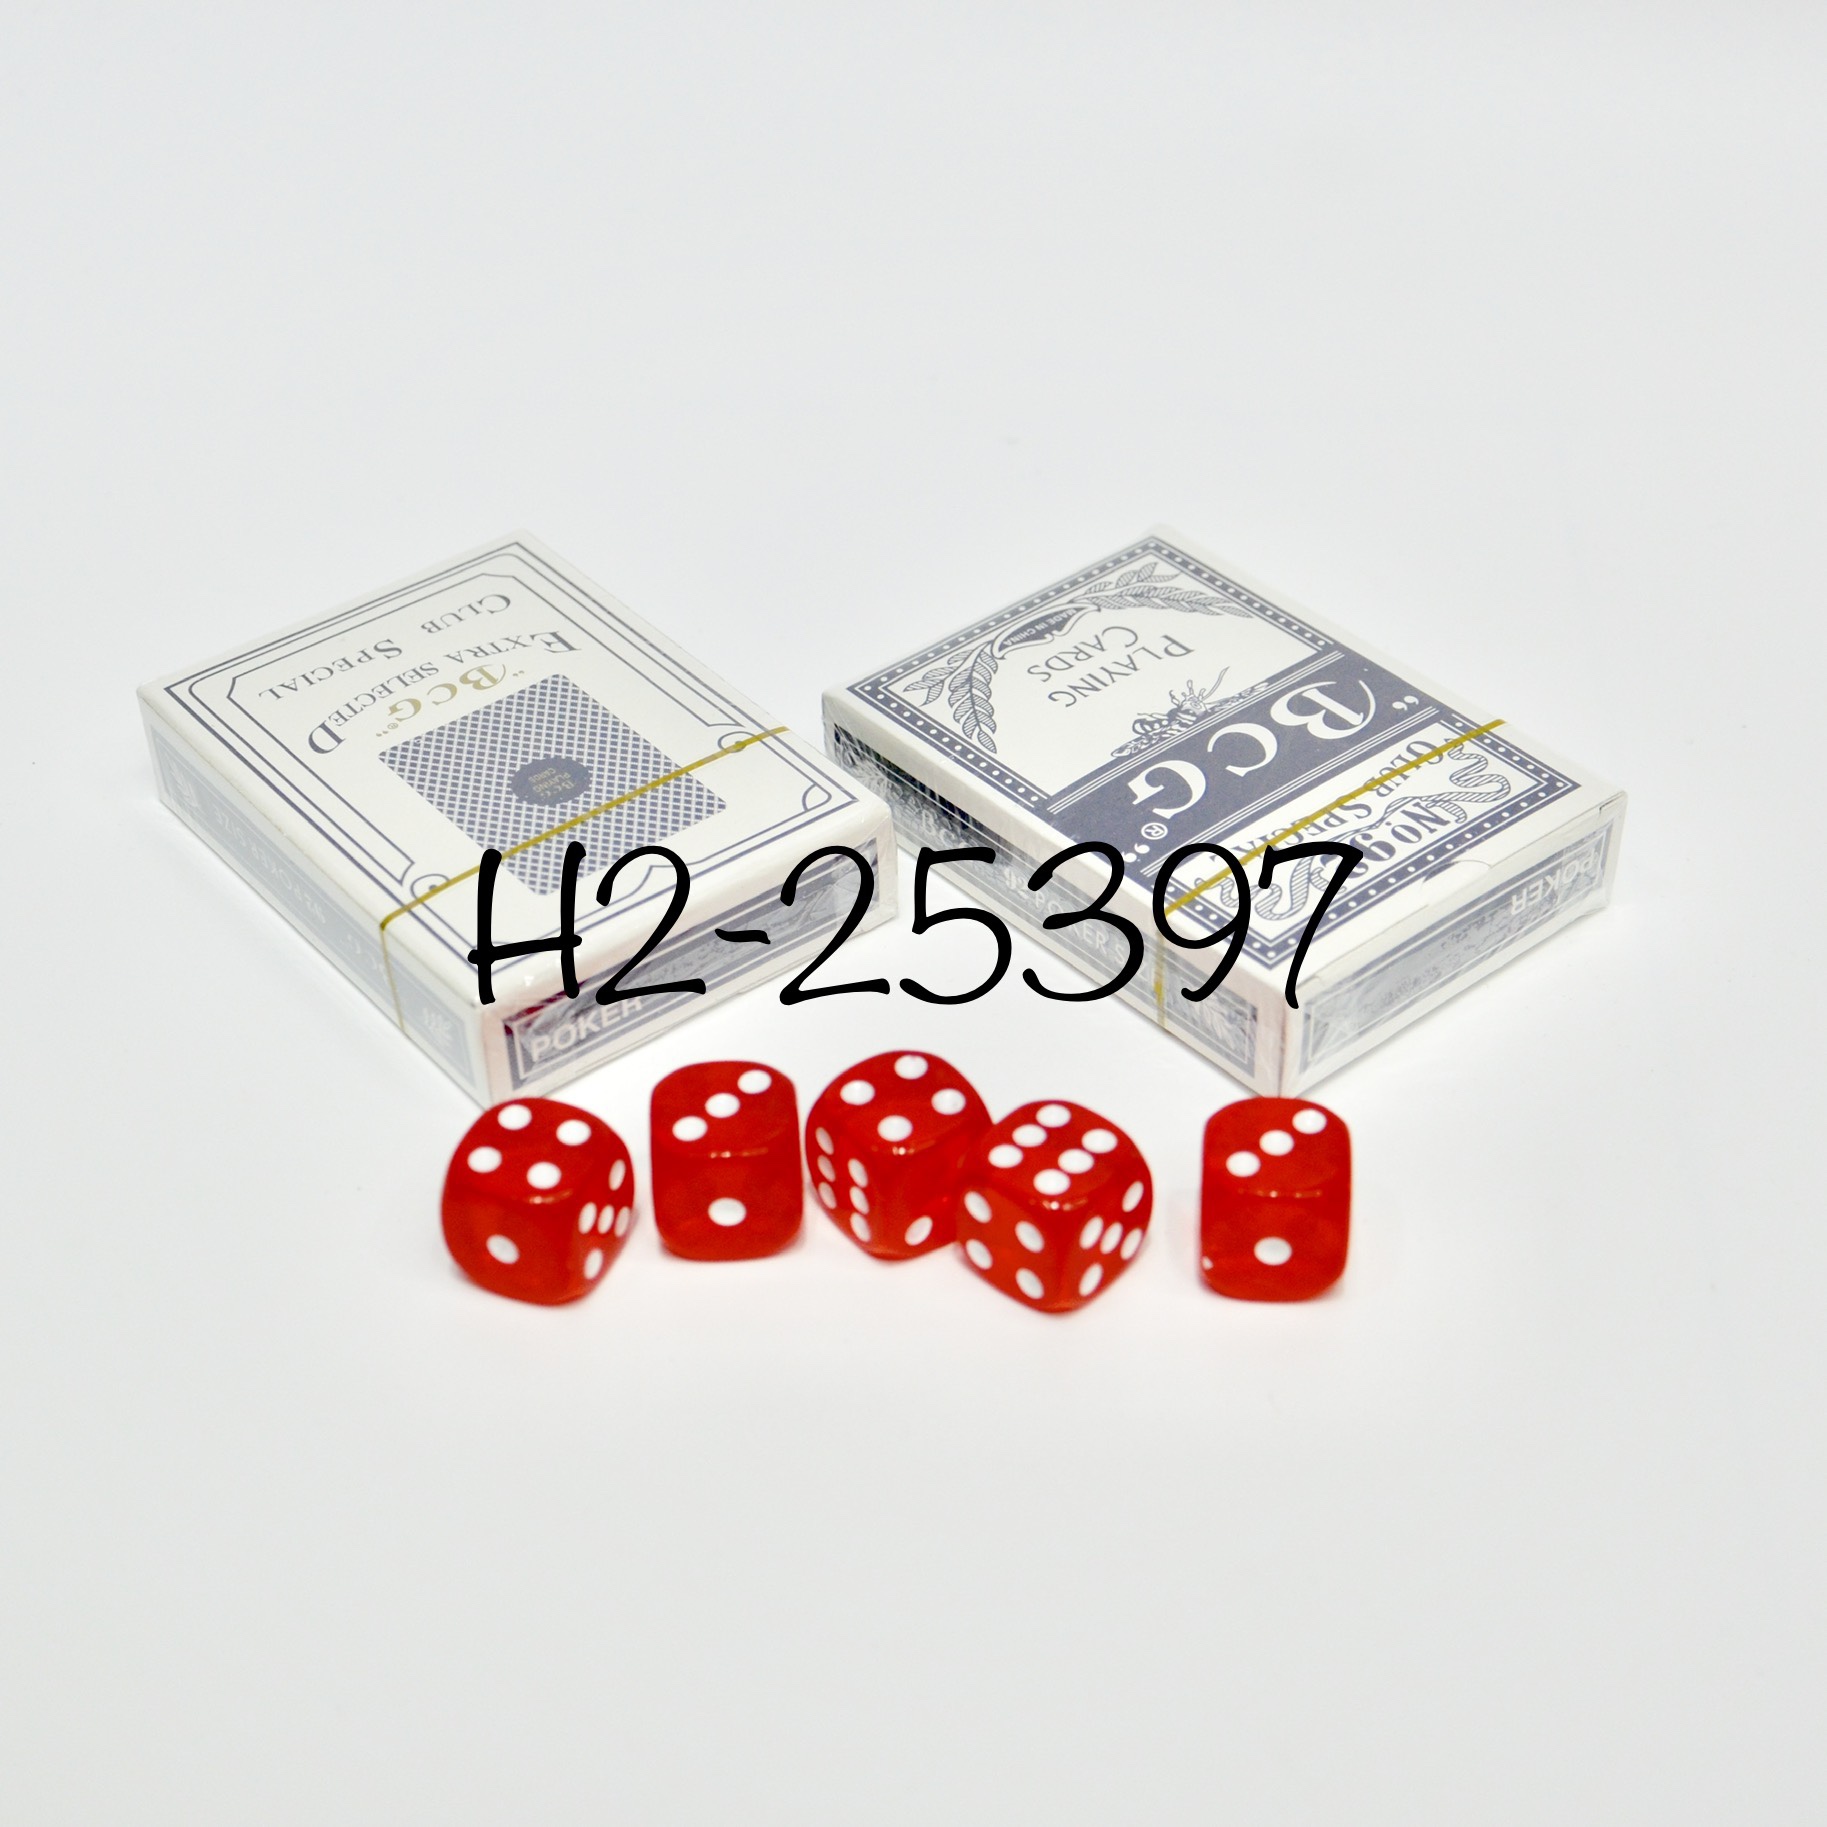 300码铝箱筹码套装/300p Poker Set详情图3